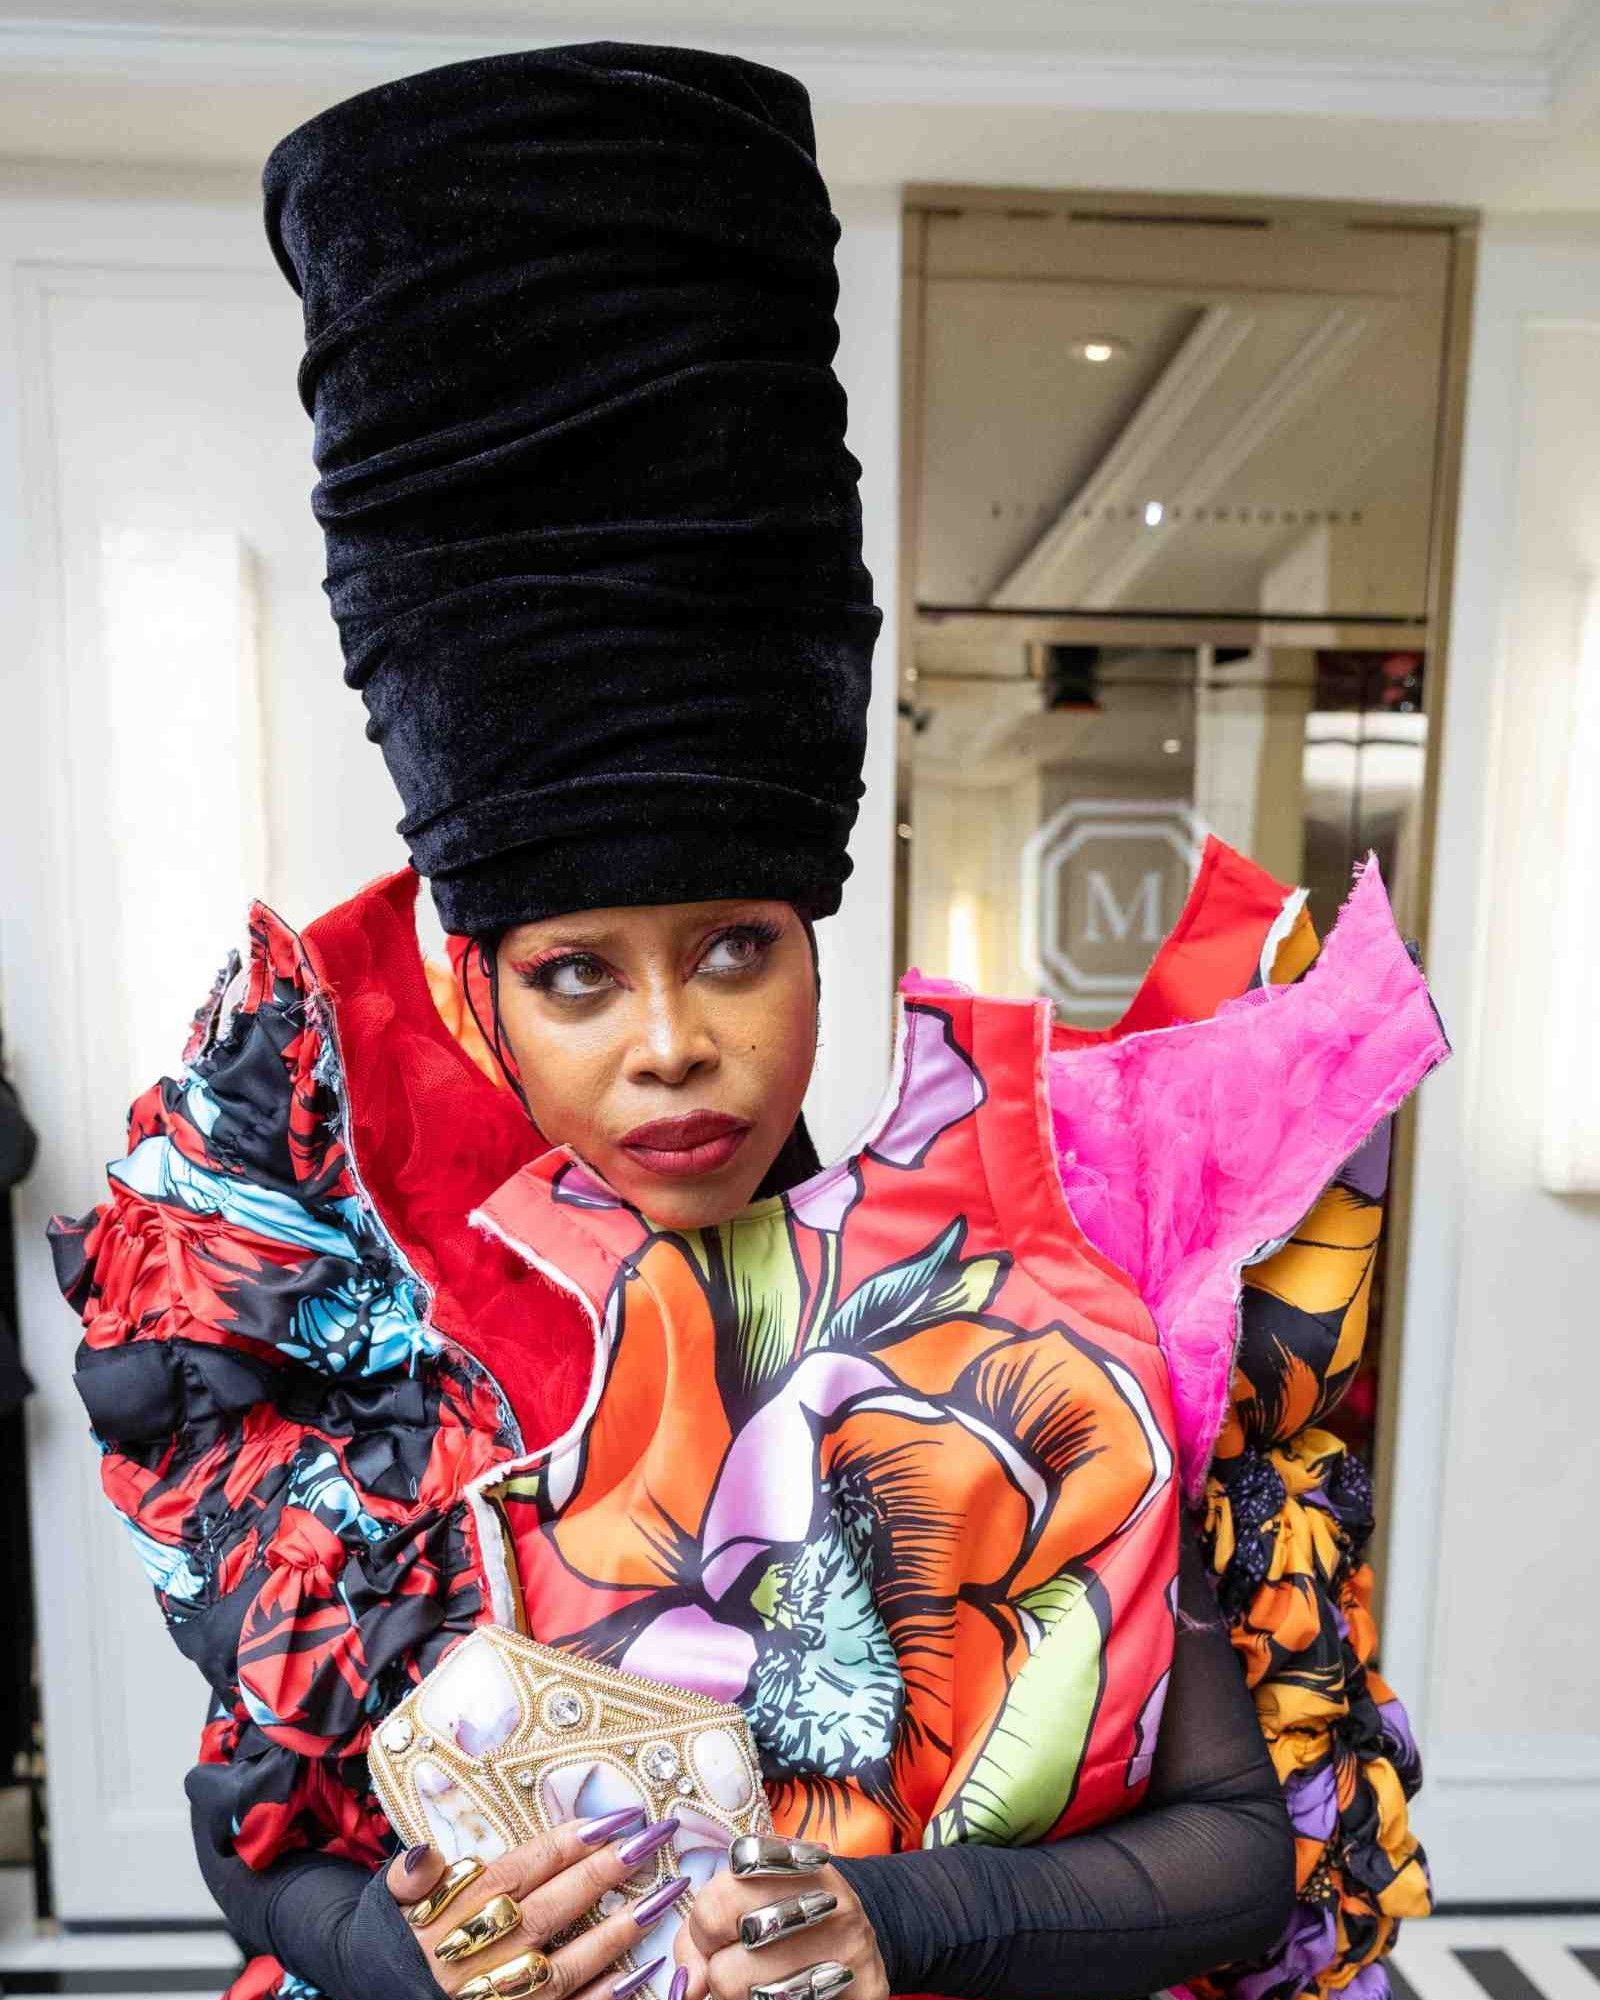 La storia dei cappelli di Erykah Badu  Come la regina dell’R&B ha trovato il suo look